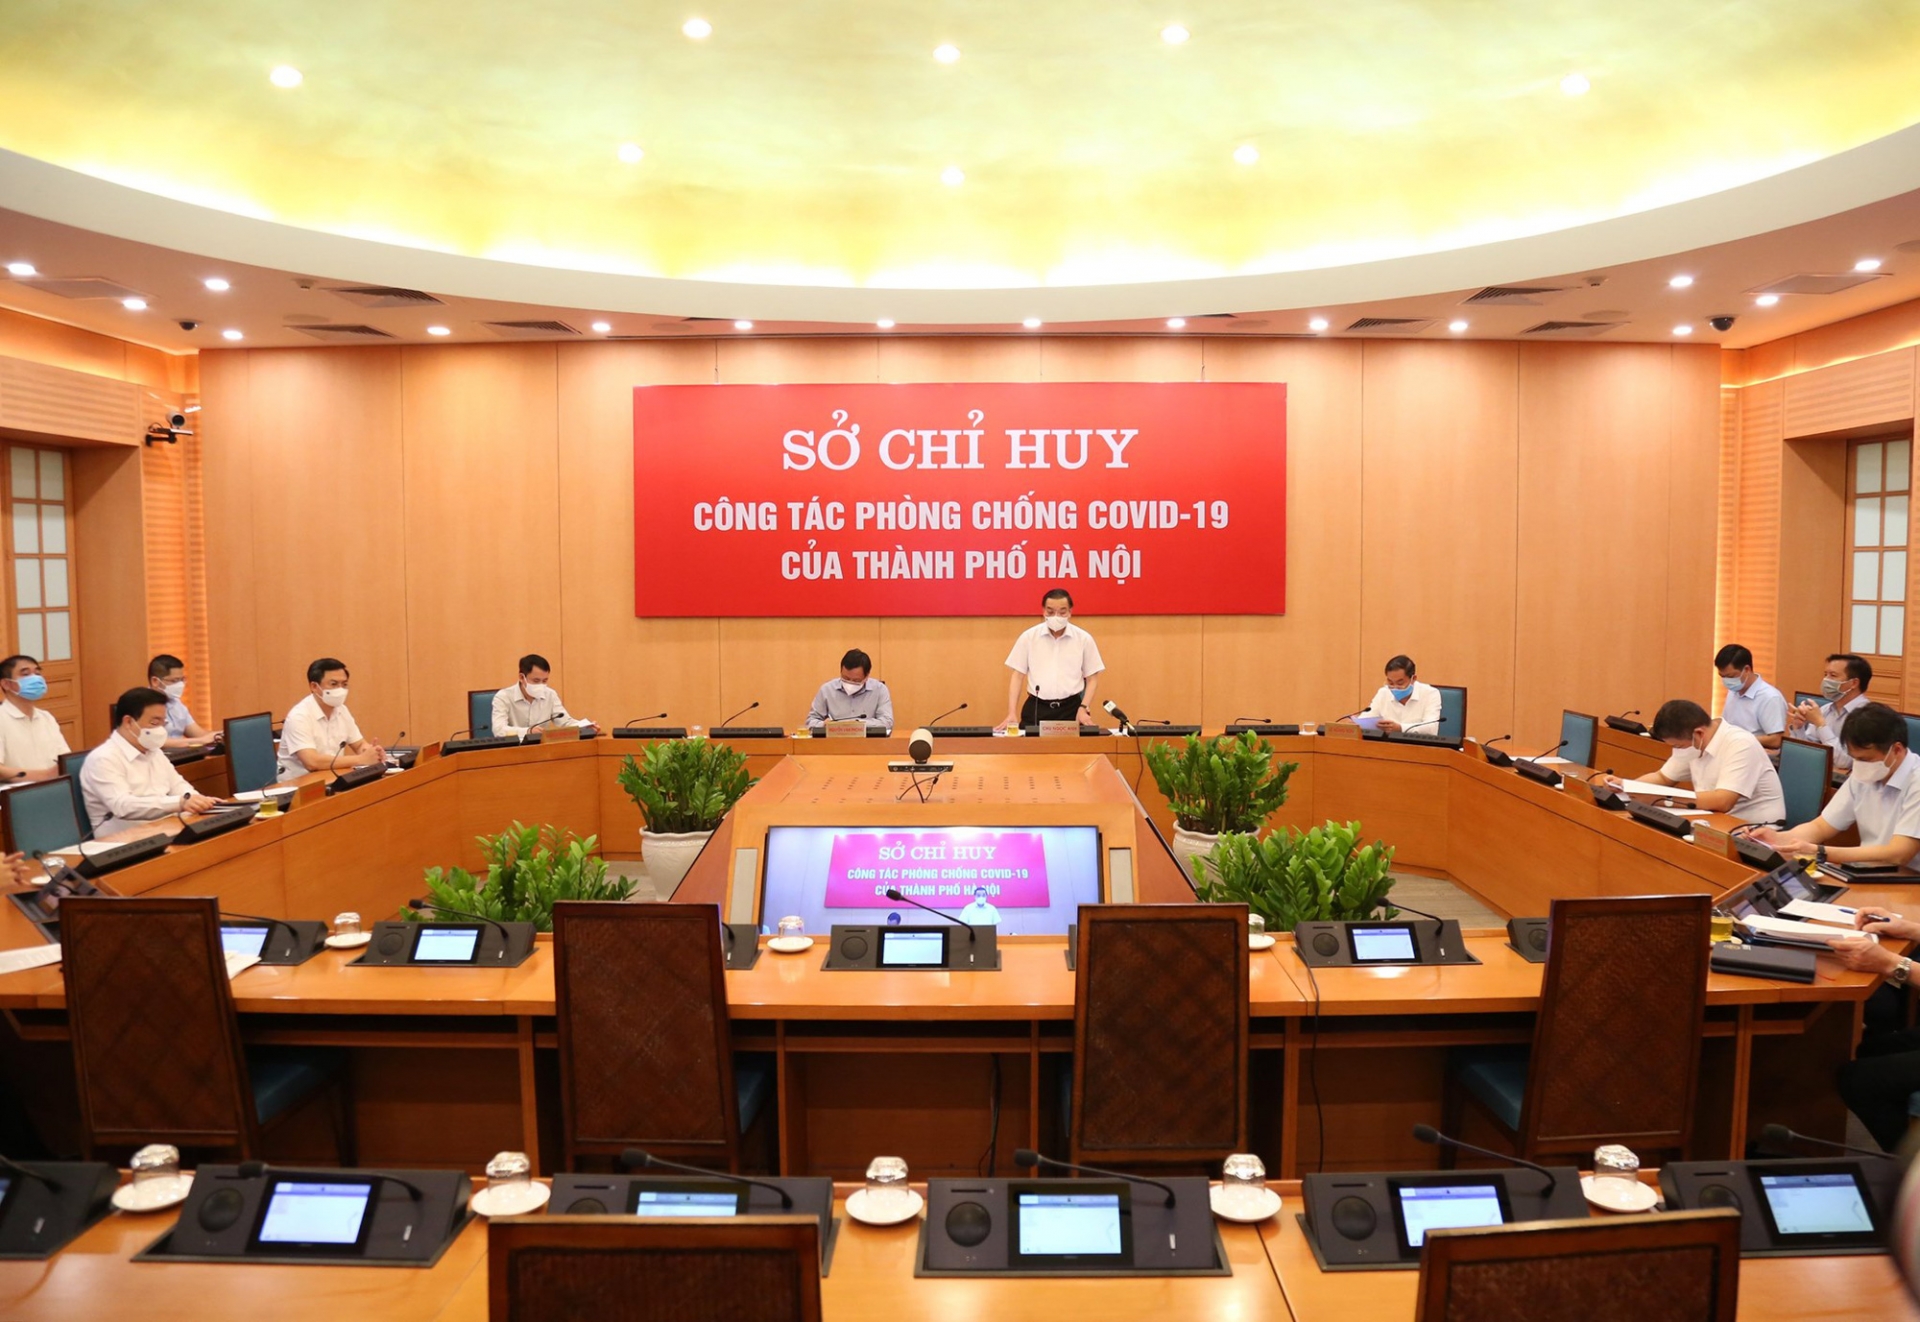 Chủ tịch UBND Thành phố Hà Nội Chu Ngọc Anh: Những ngày giãn cách còn lại có ý nghĩa rất quan trọng